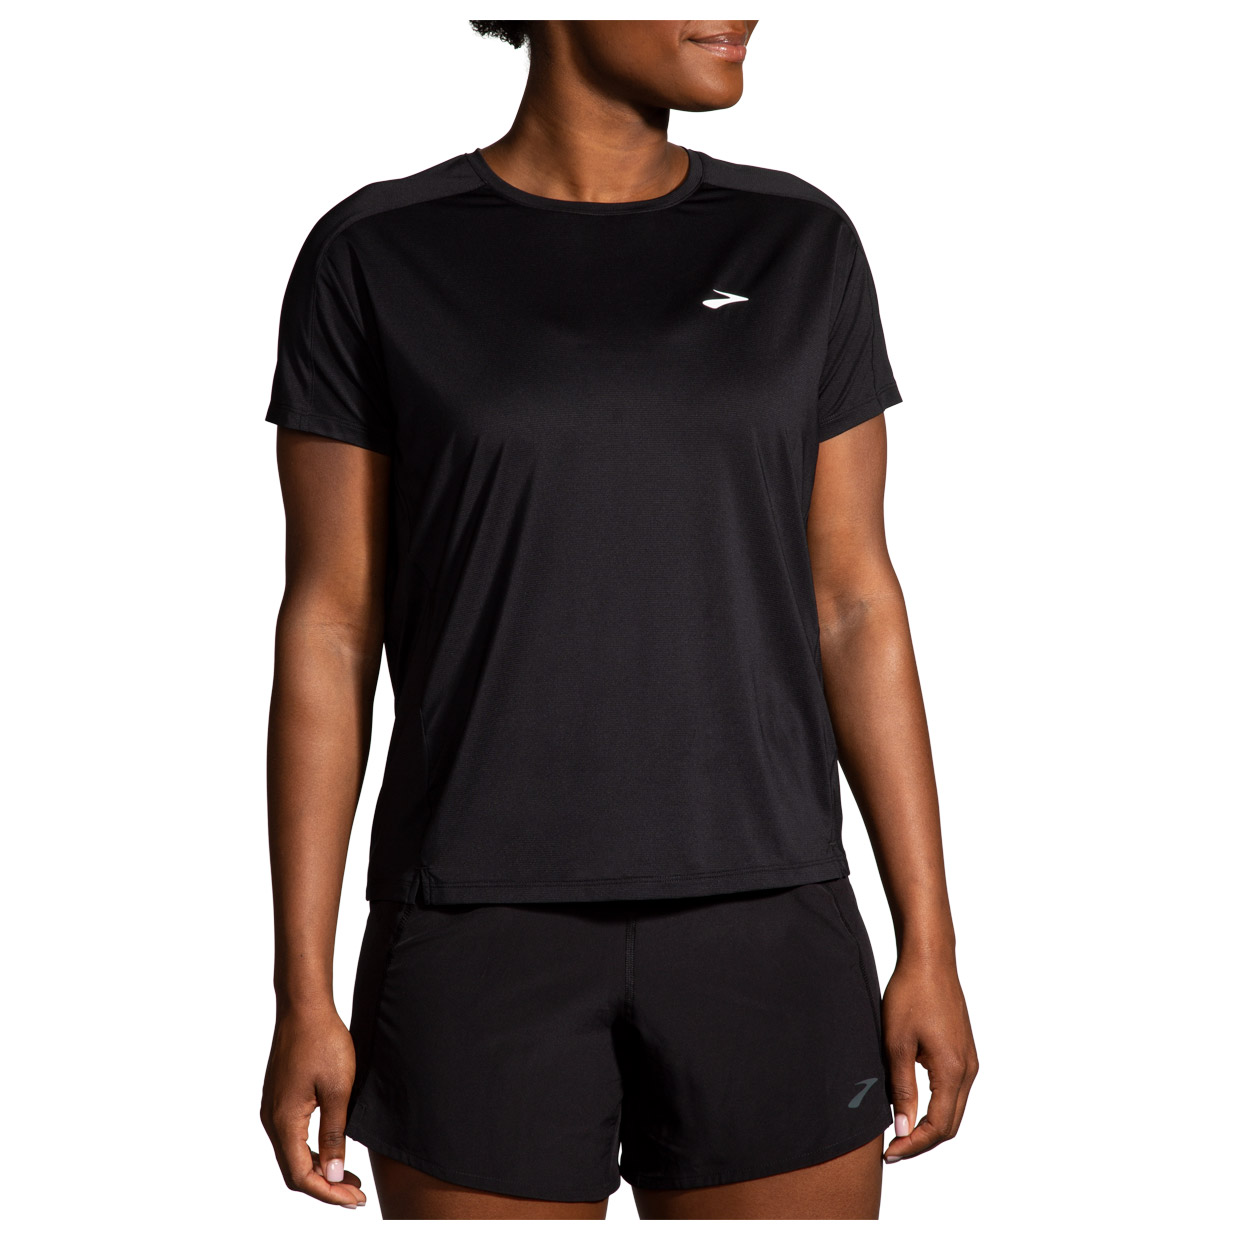 Damen Laufshirt Sprint Free Short Sleeve 2.0